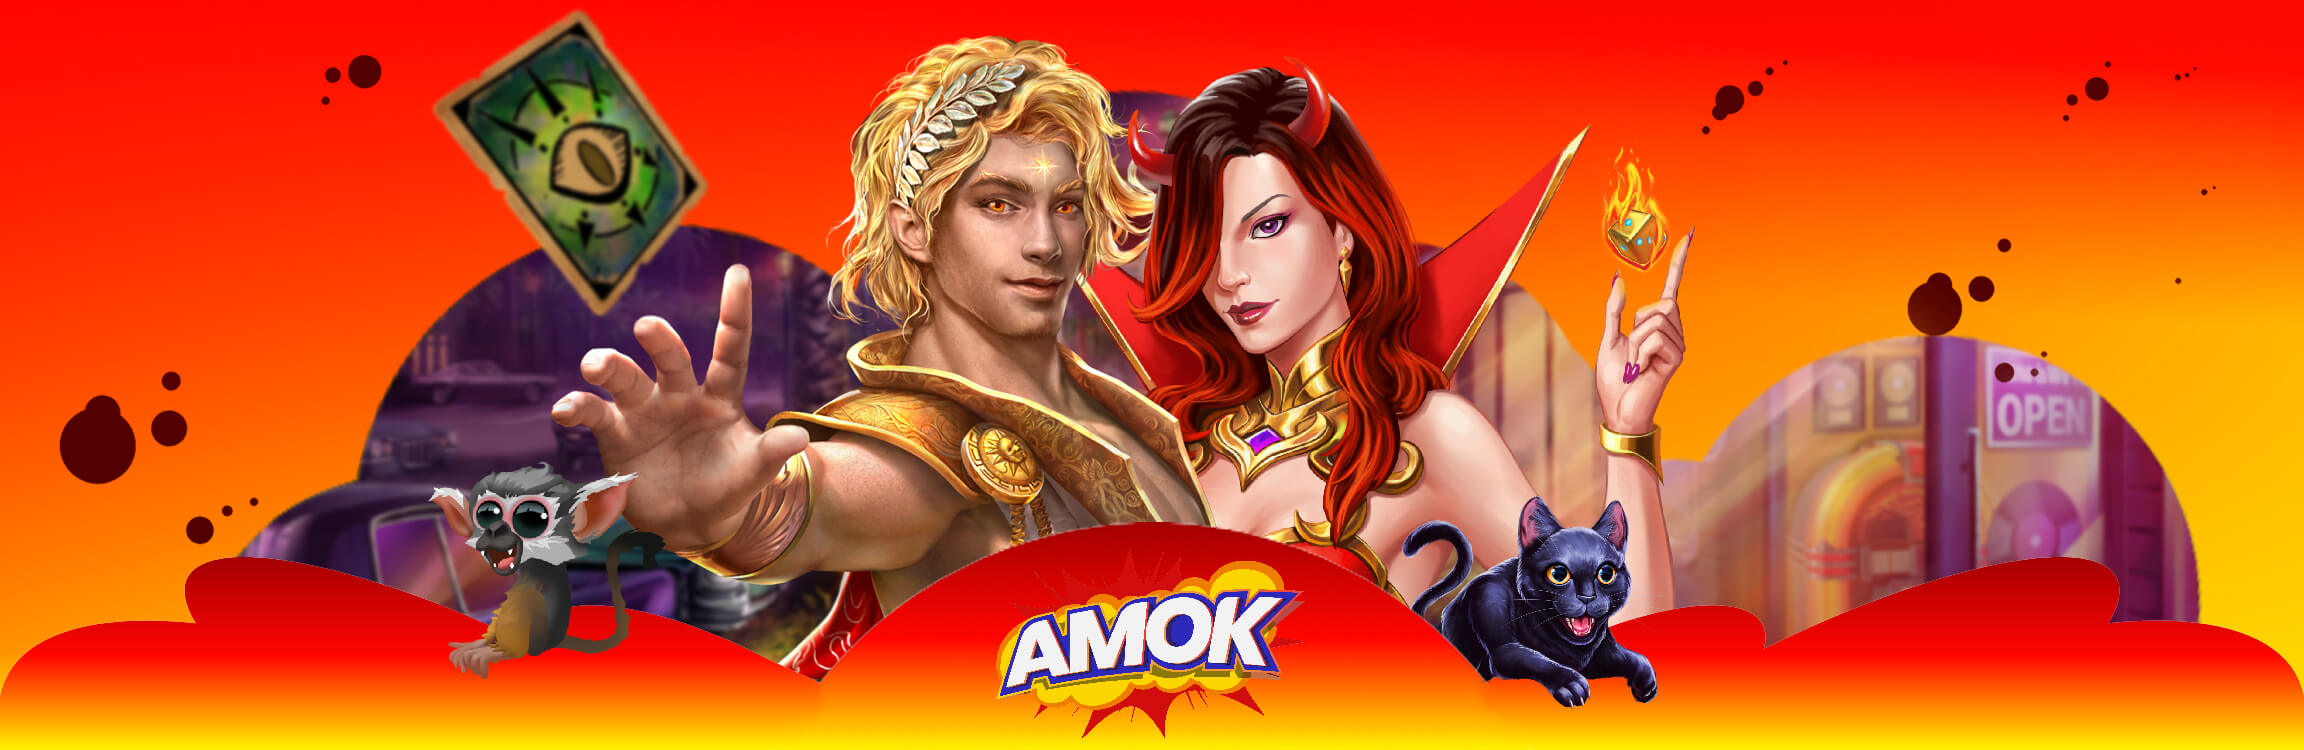 Amok Online Casino